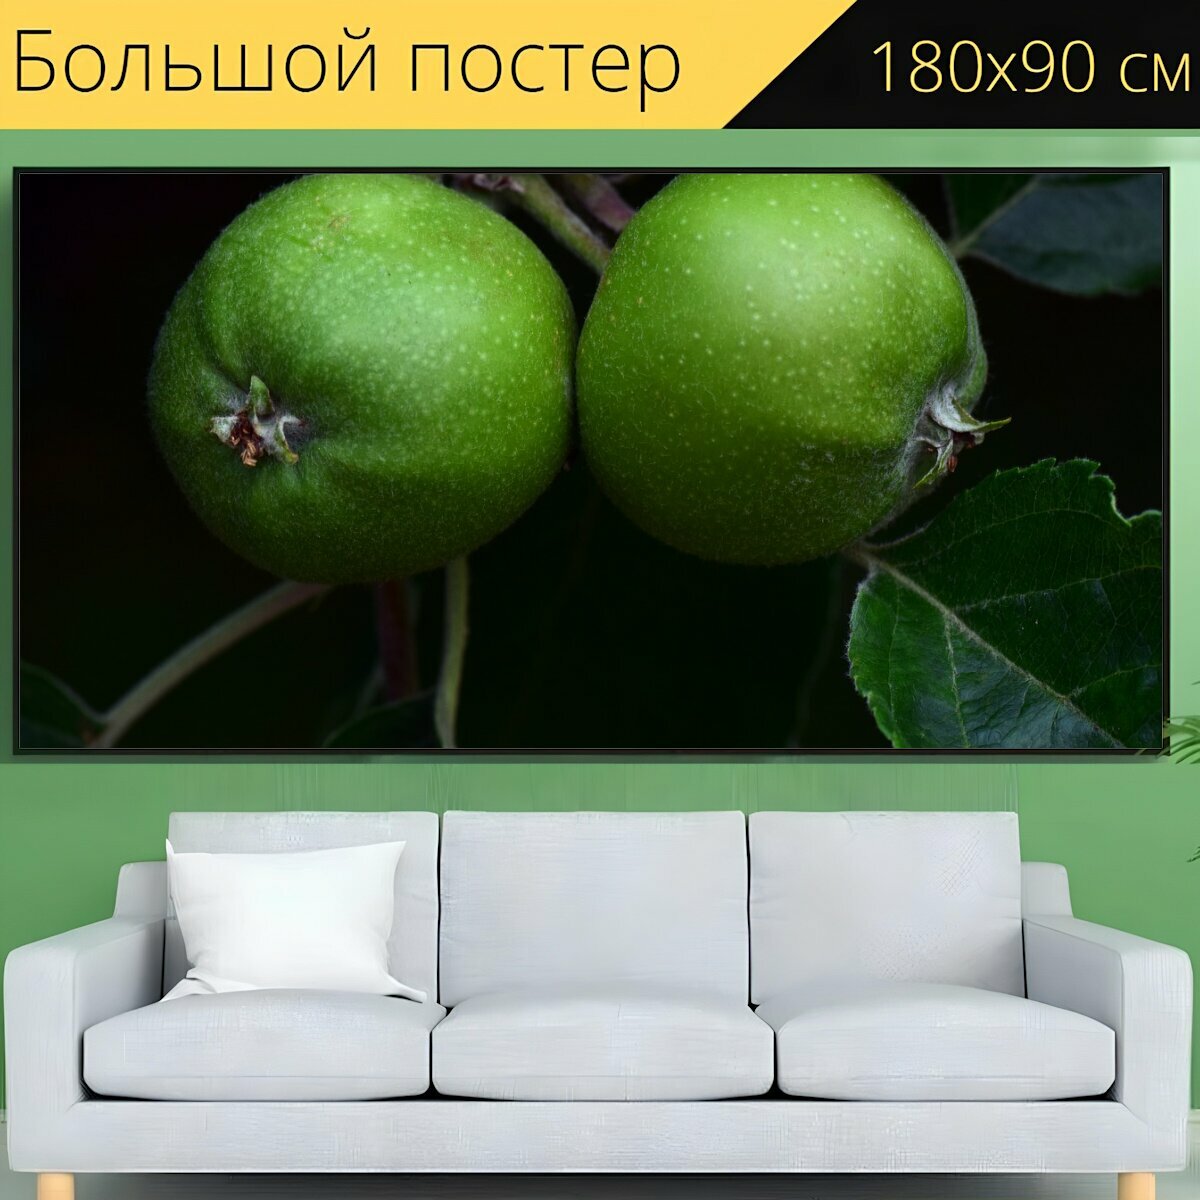 Большой постер "Яблоко, зеленое яблоко, фрукты" 180 x 90 см. для интерьера